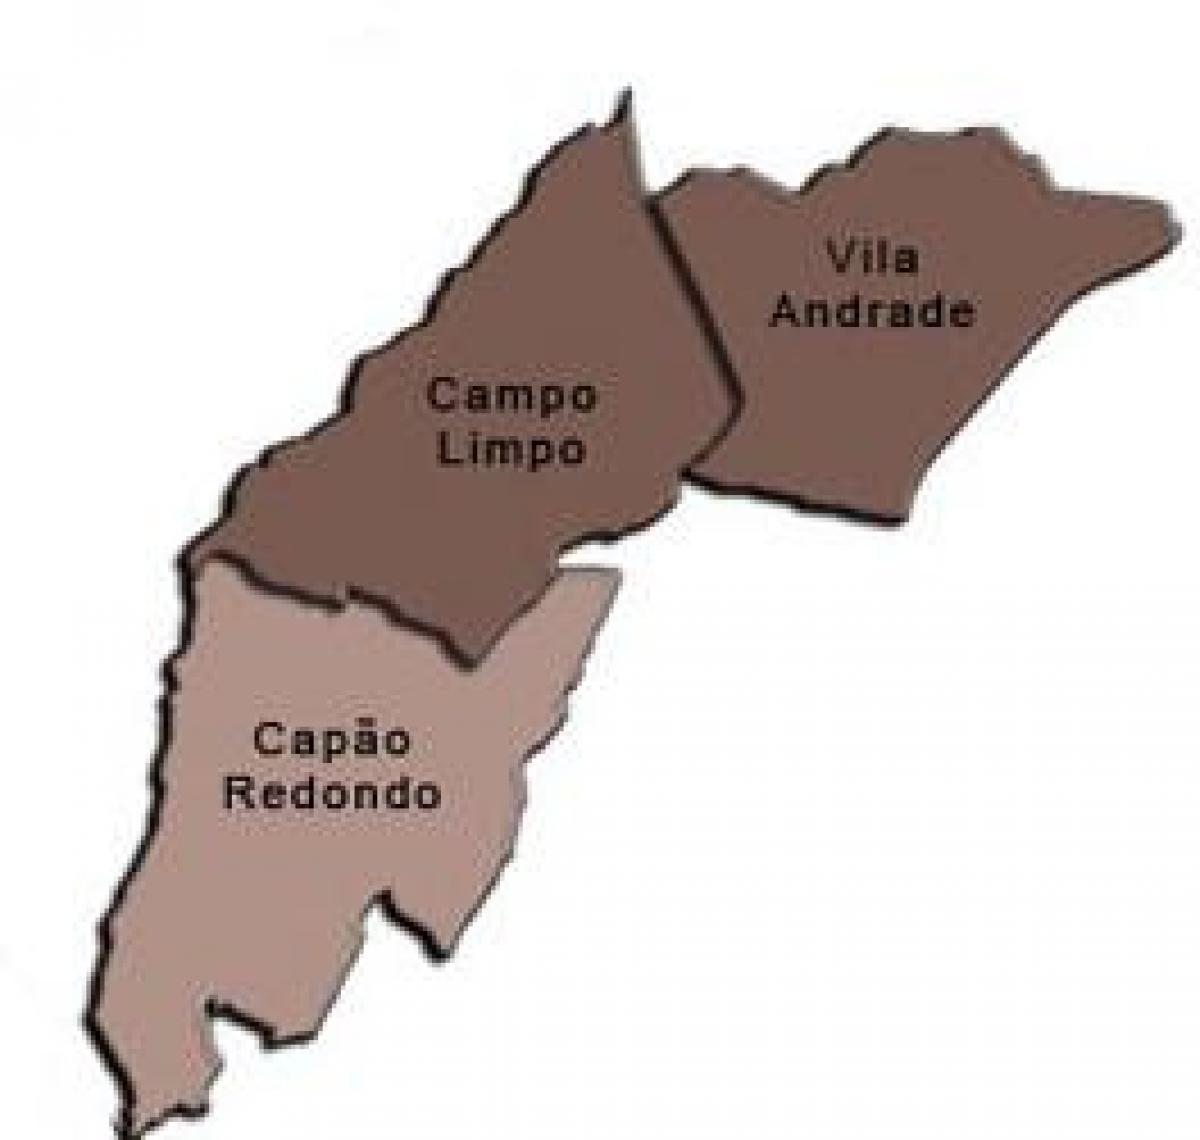 خريطة كامبو ليمبو الفرعية.